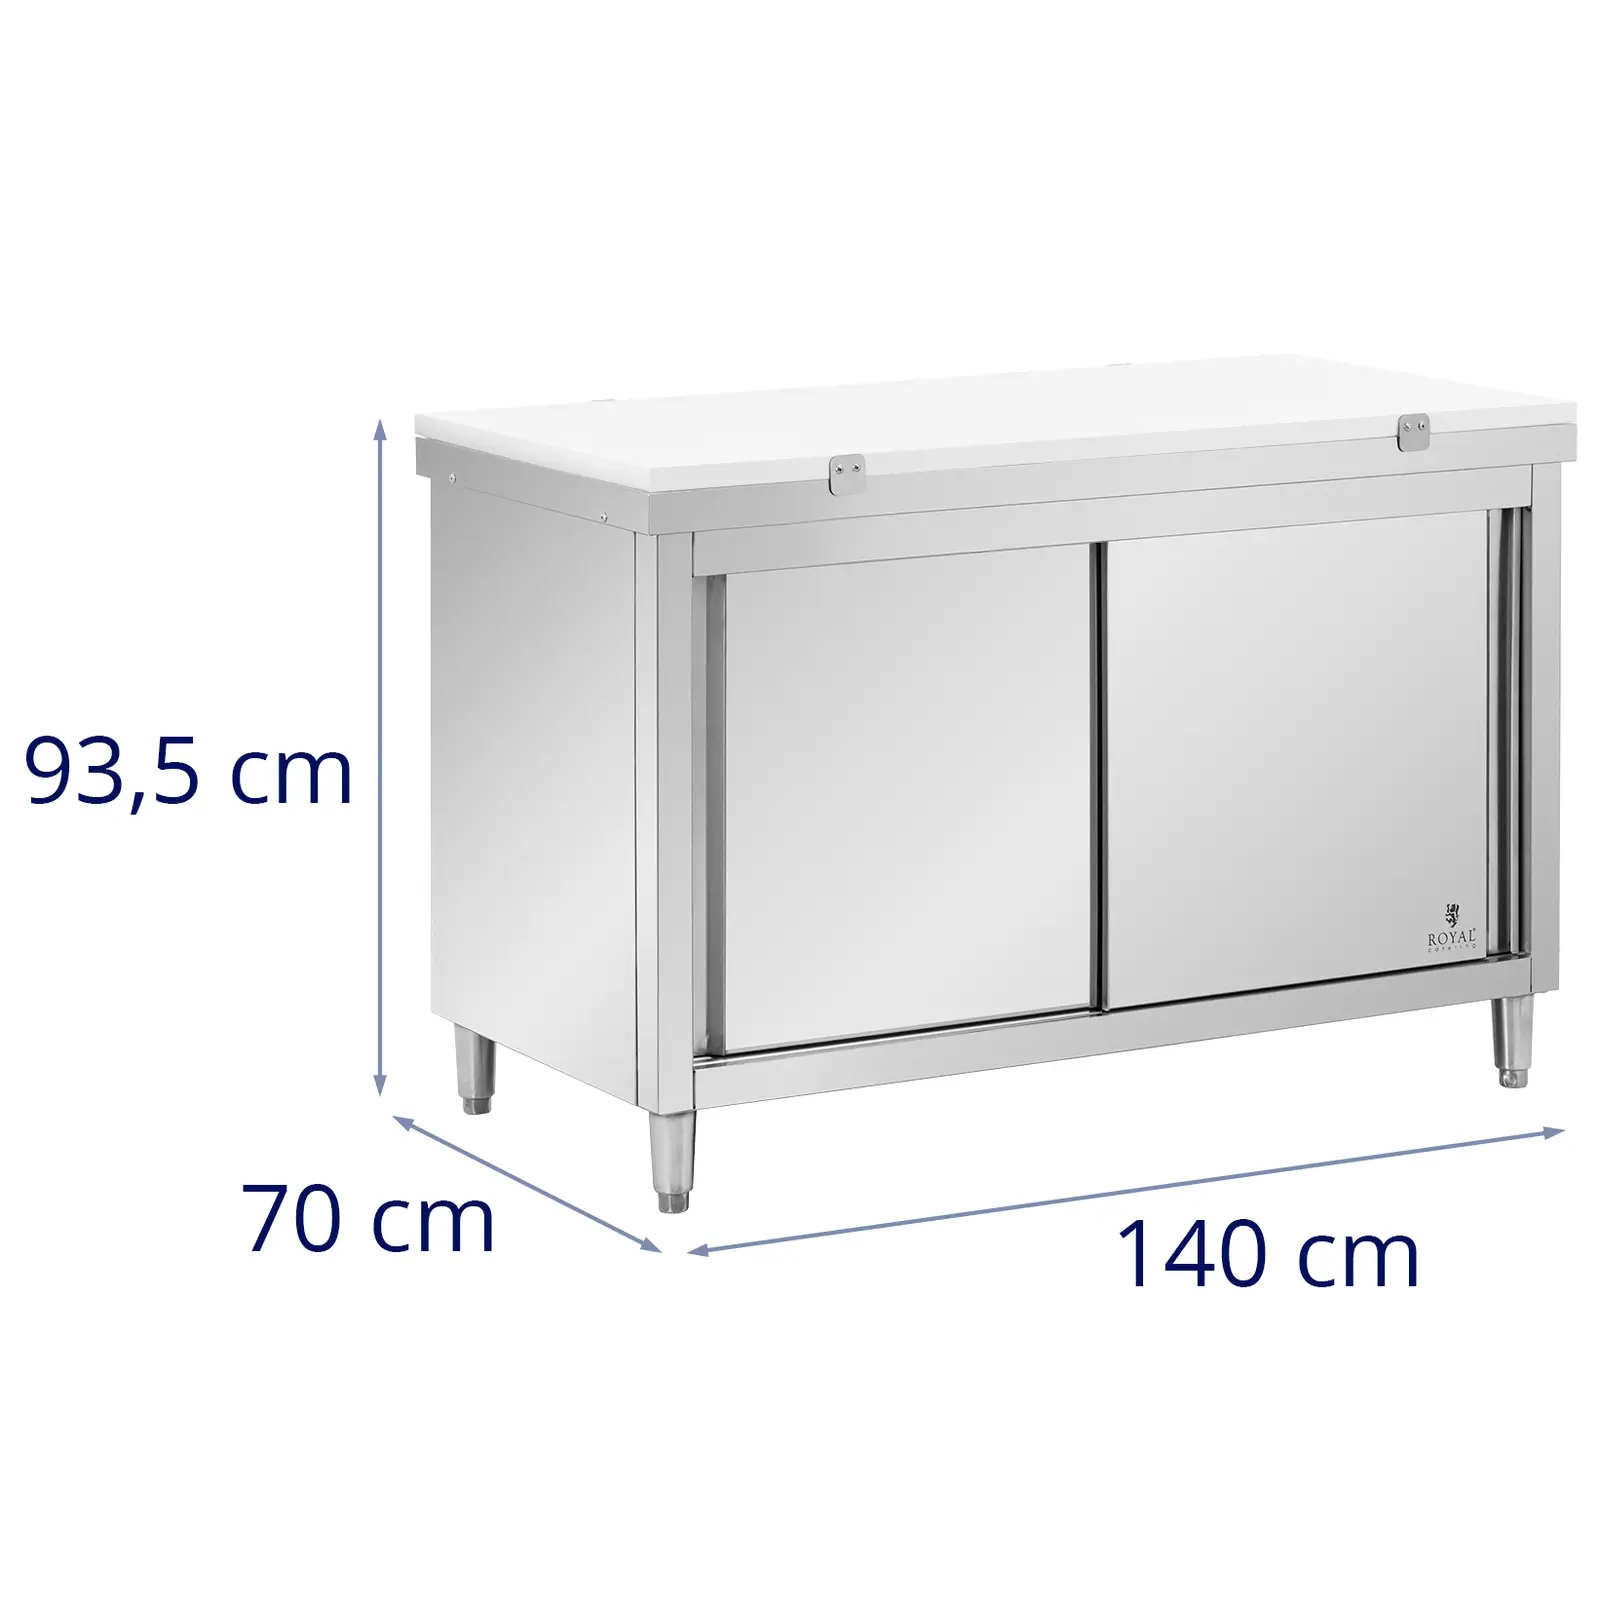 Кухненска подготвителна маса от неръждаема стомана - 140 x 70 cm - товароносимост 500 kg - с дъска за рязане - Royal Catering